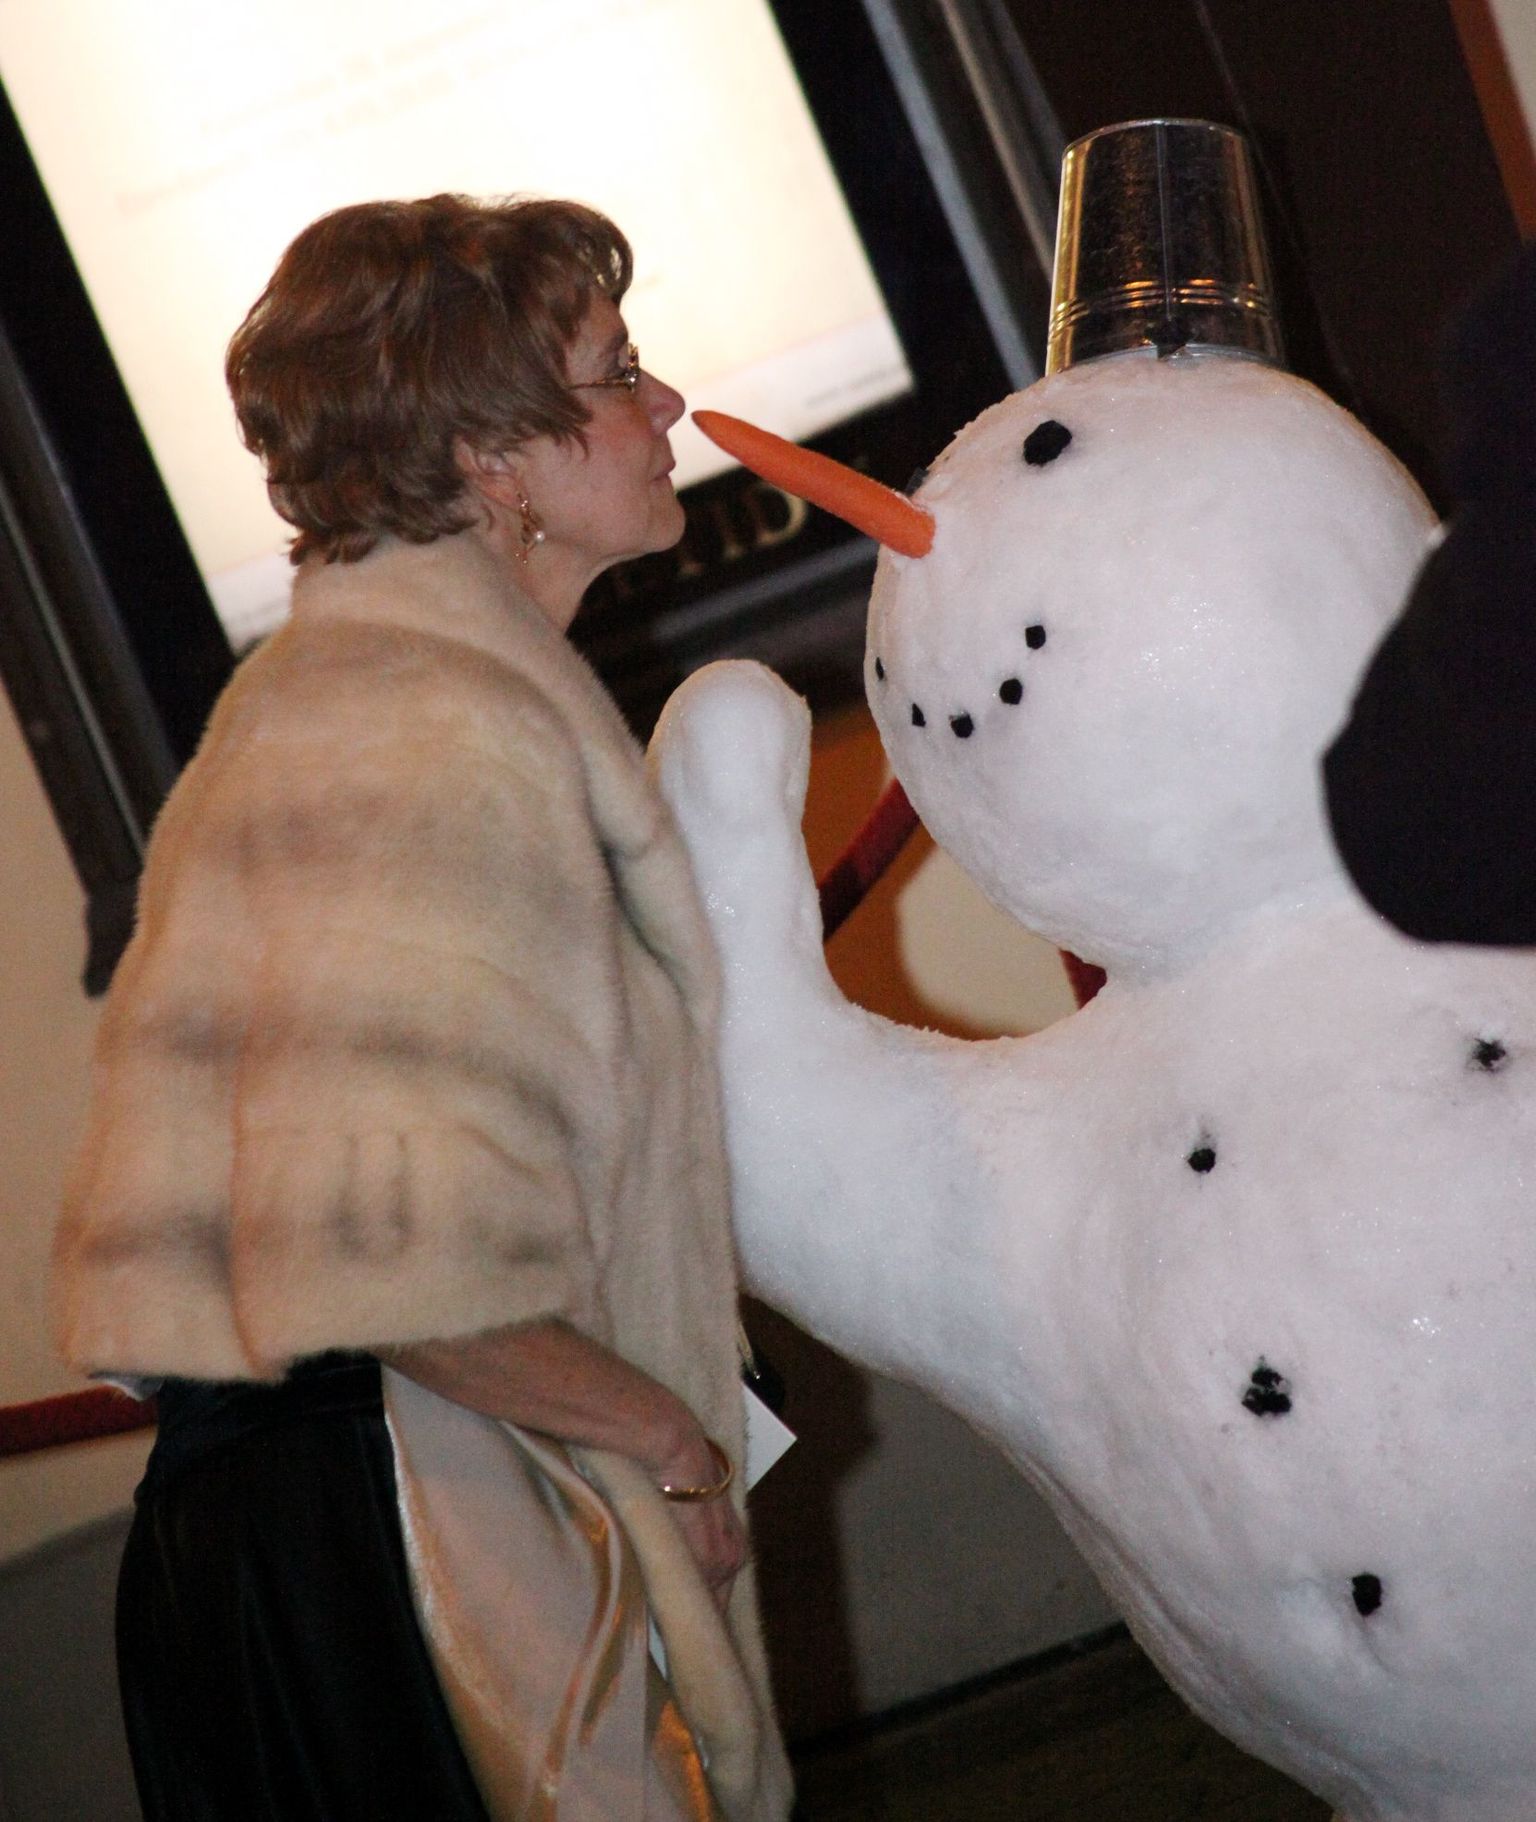 Presiendi vastuvõtult lahkuvad külalised Vol. 1
Tunne Kelami kaasa Mai-Ann vallatles lumemehega